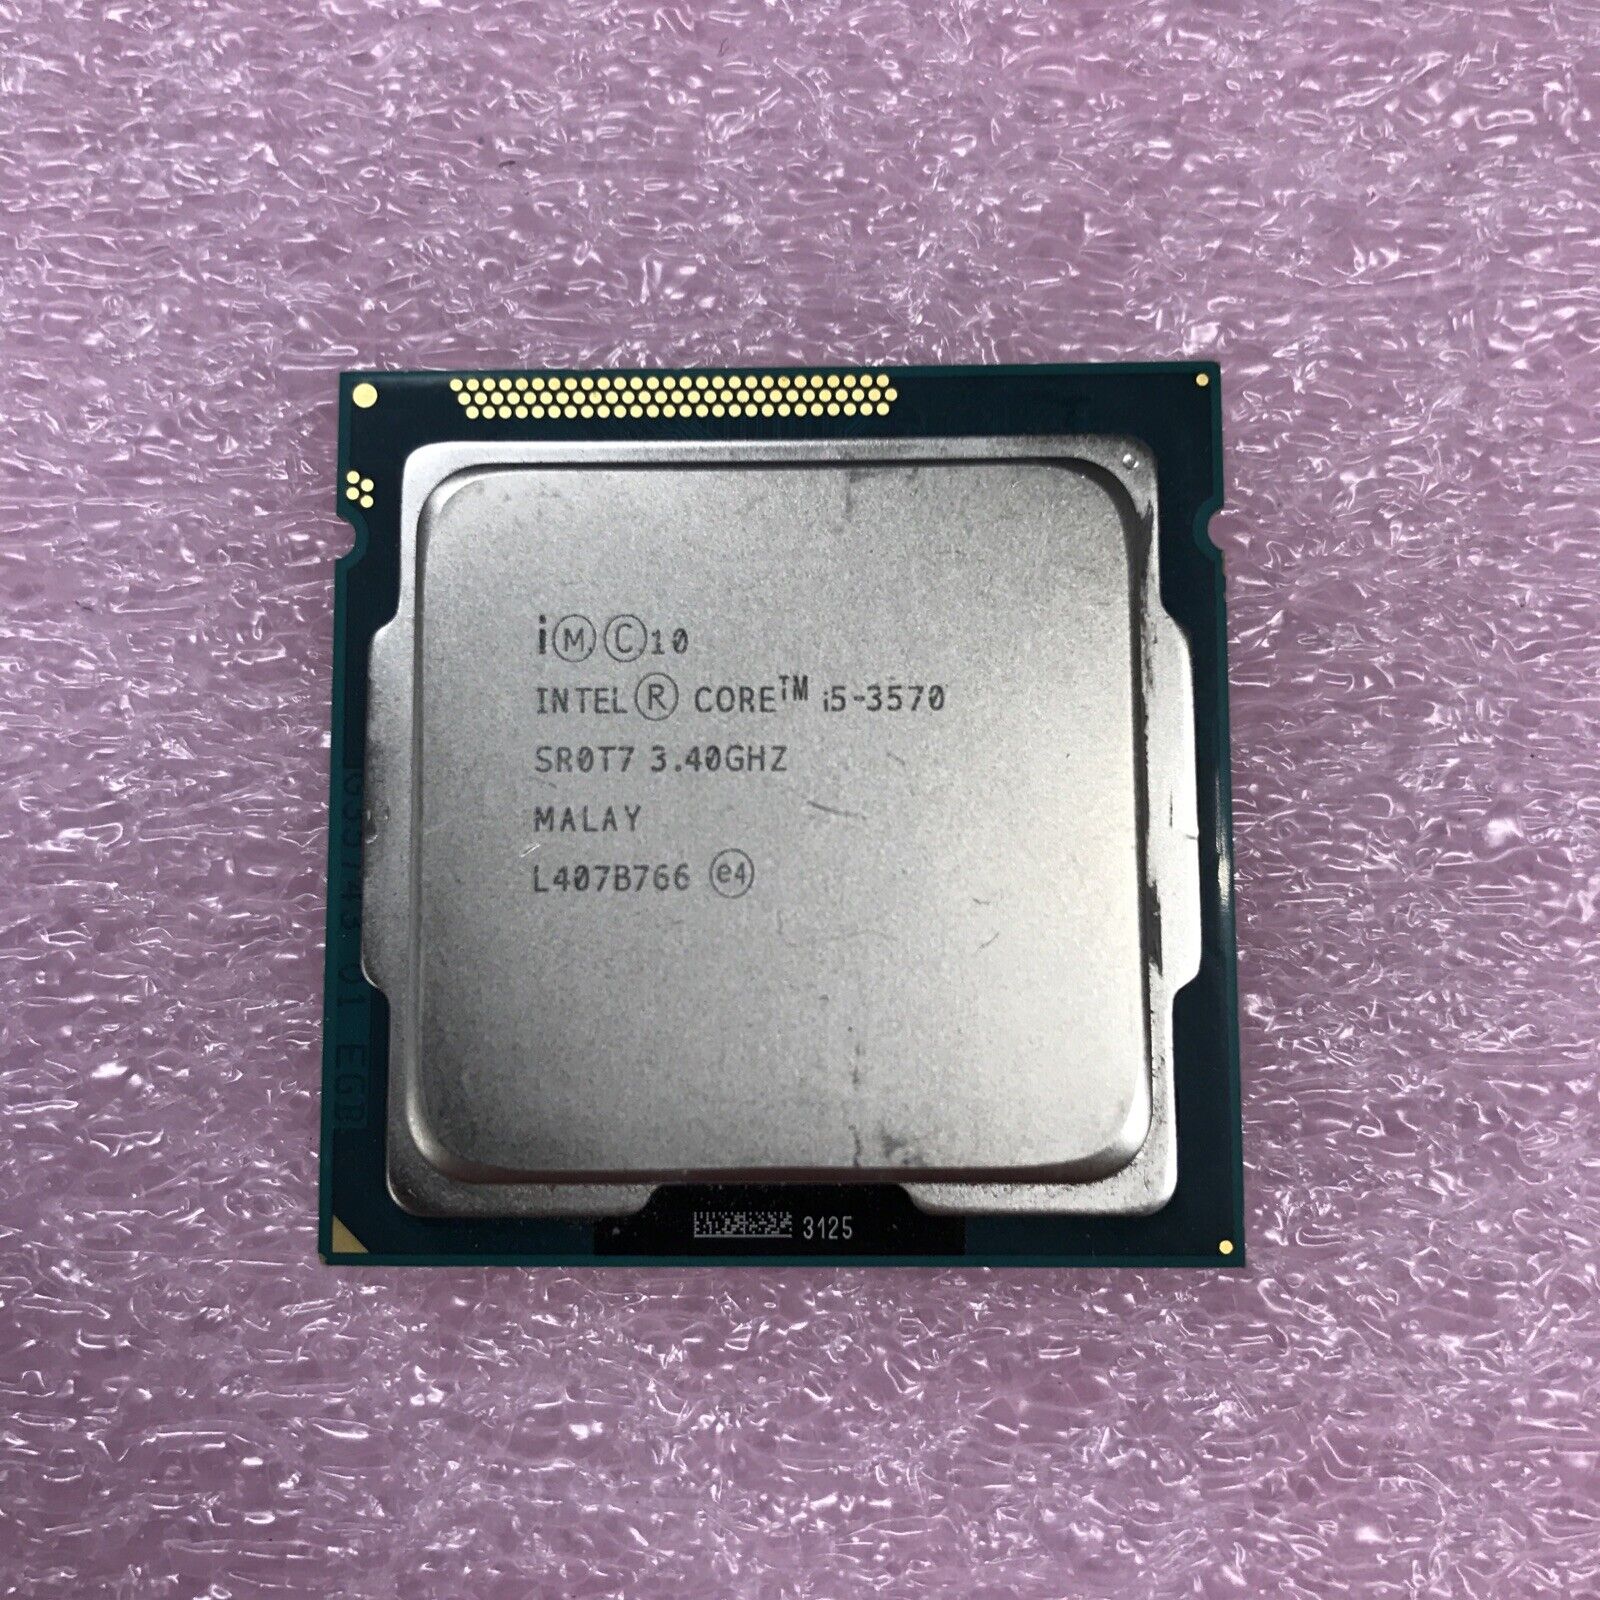 Intel Core i5-3570 3.40GHz Quad-Core CPU Processor SR0T7 LGA1155 Socket